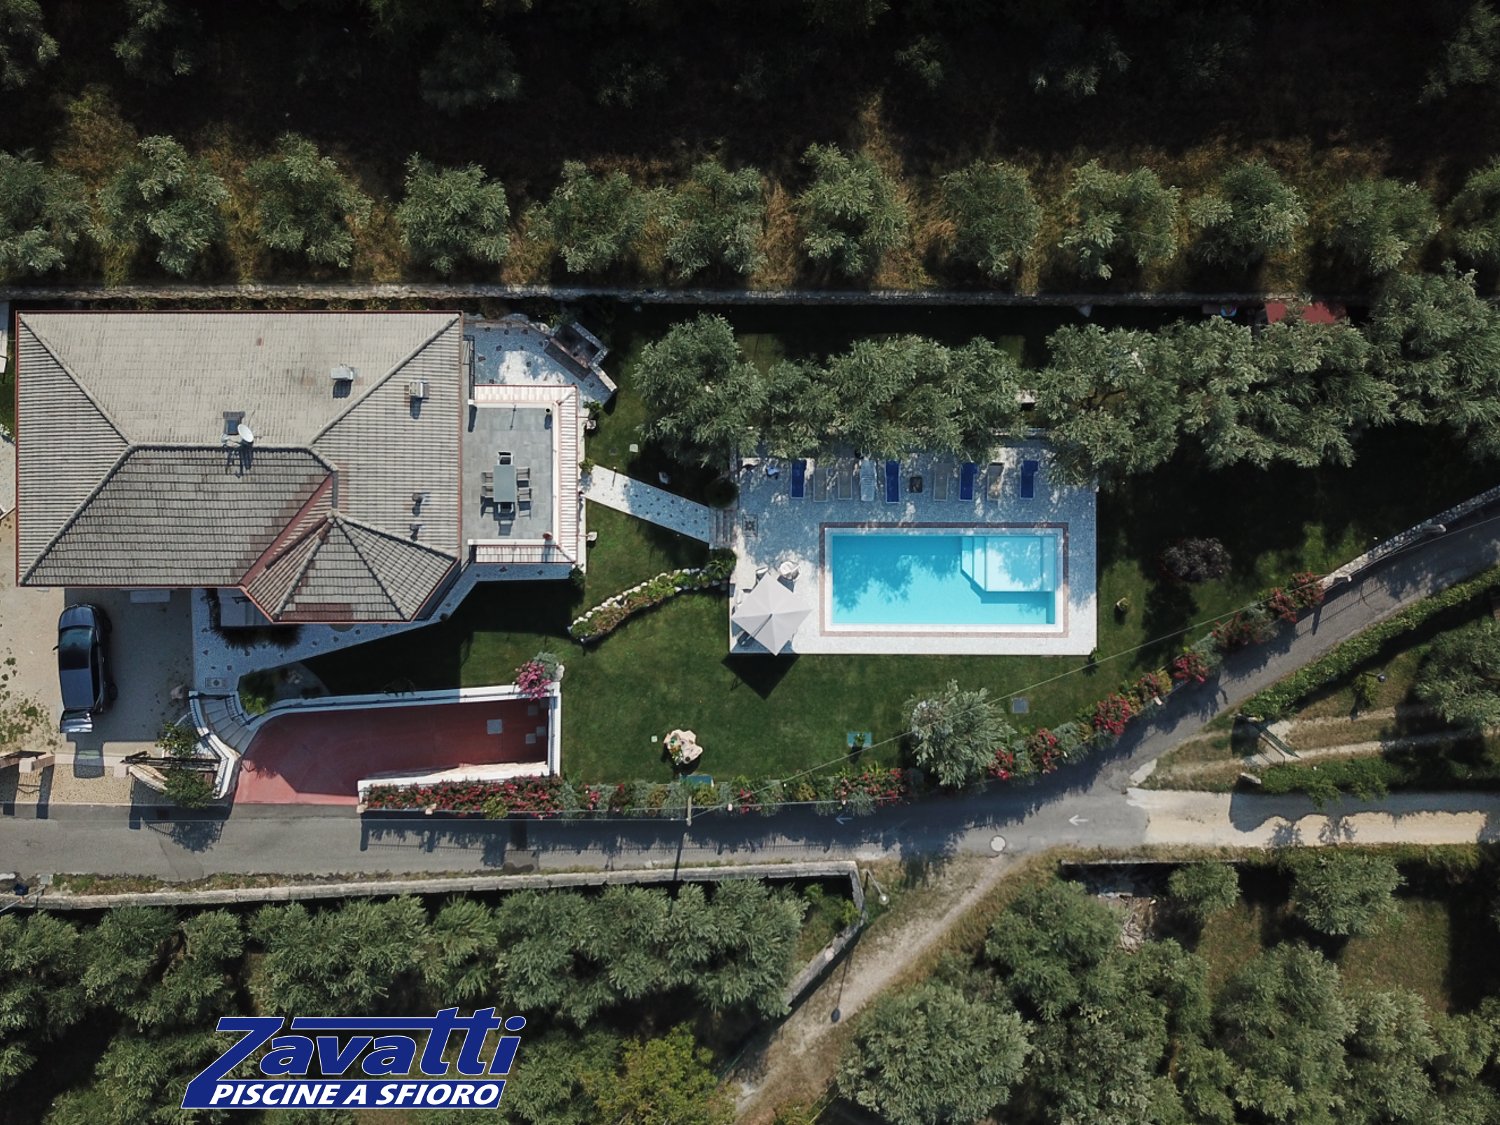 Ripresa aerea da drone di una piscina a sfioro Zavatti immersa nel verde